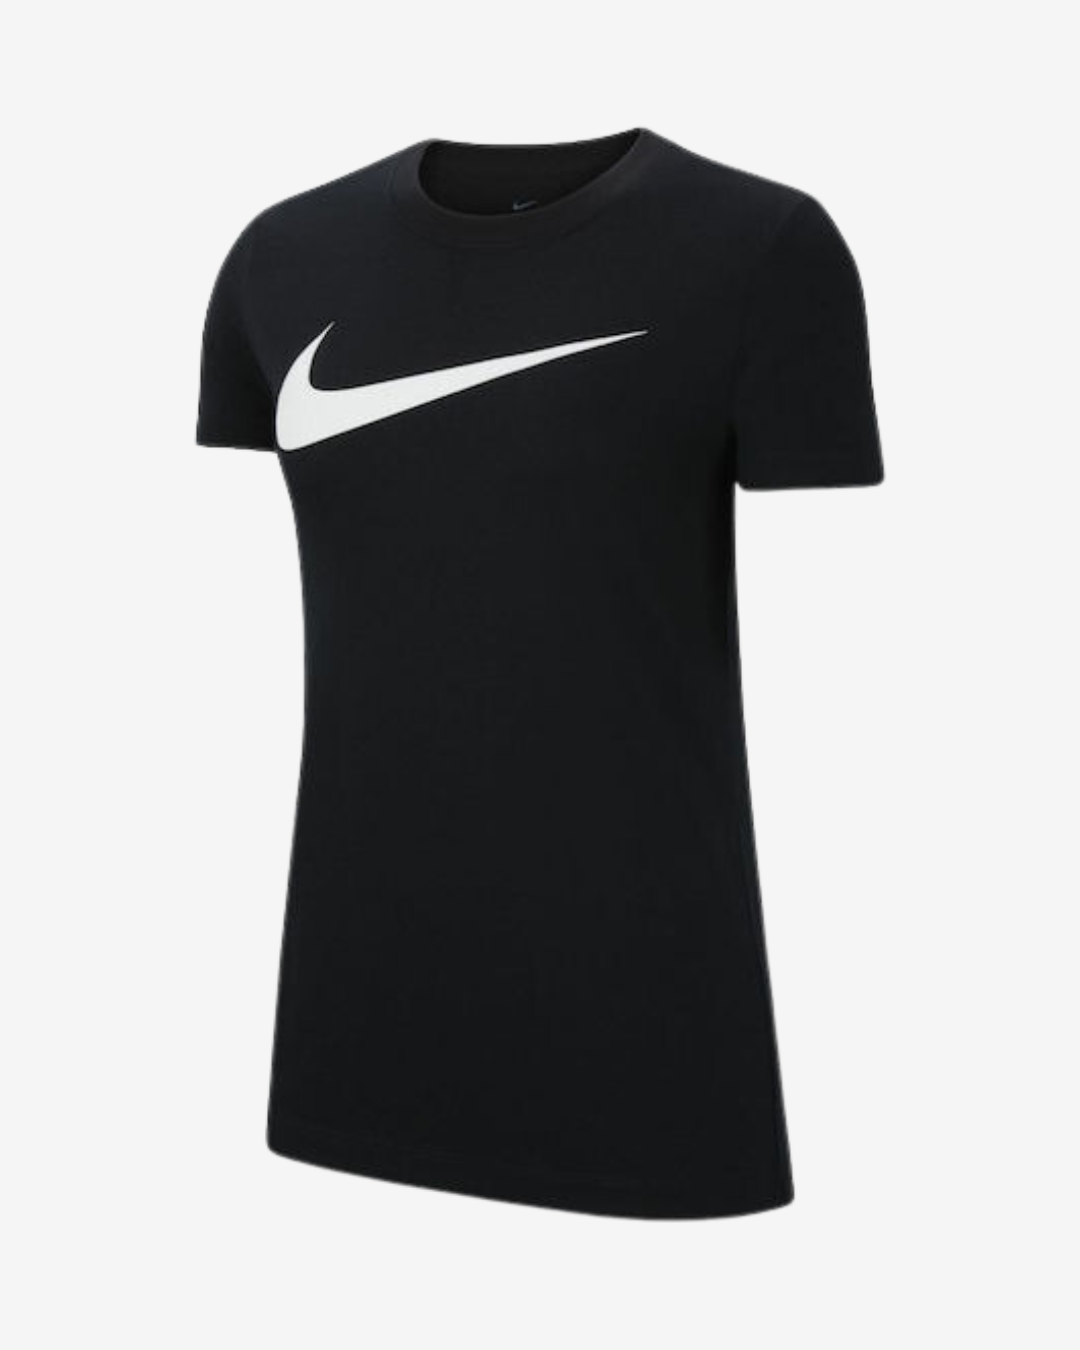 Billede af Nike Dri-fit park 20 dame t-shirt - Sort - Str. XL - Modish.dk